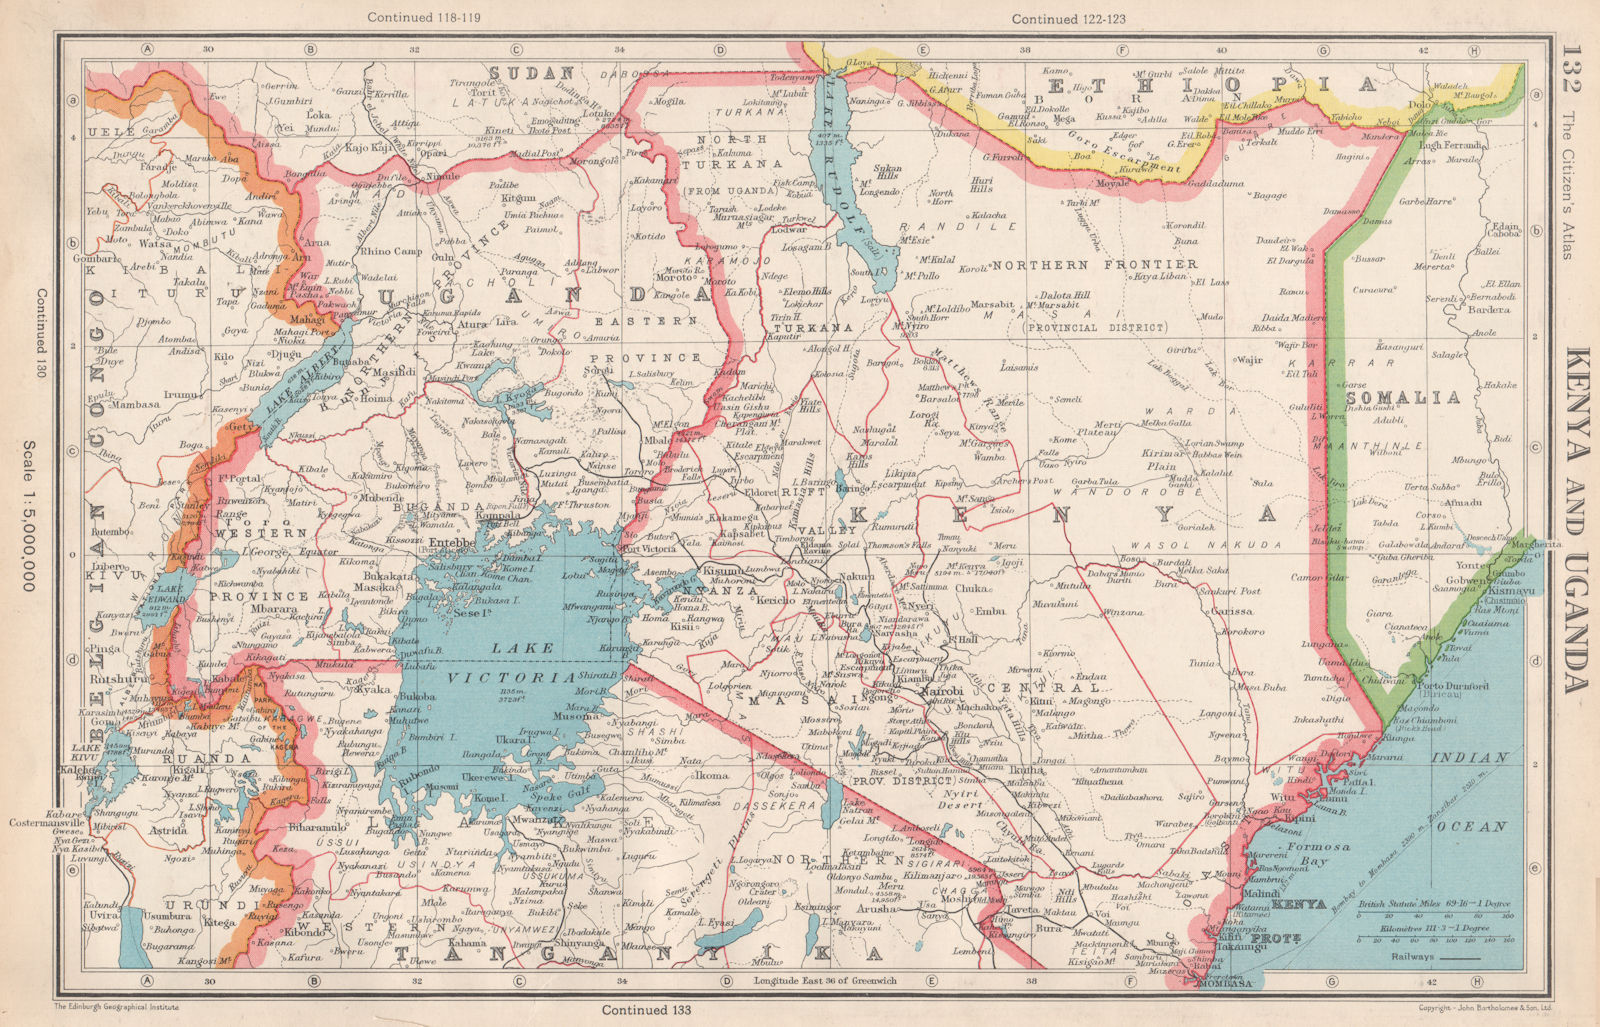 EAST AFRICA. Kenya and Uganda. Lake Victoria. BARTHOLOMEW 1952 old vintage map